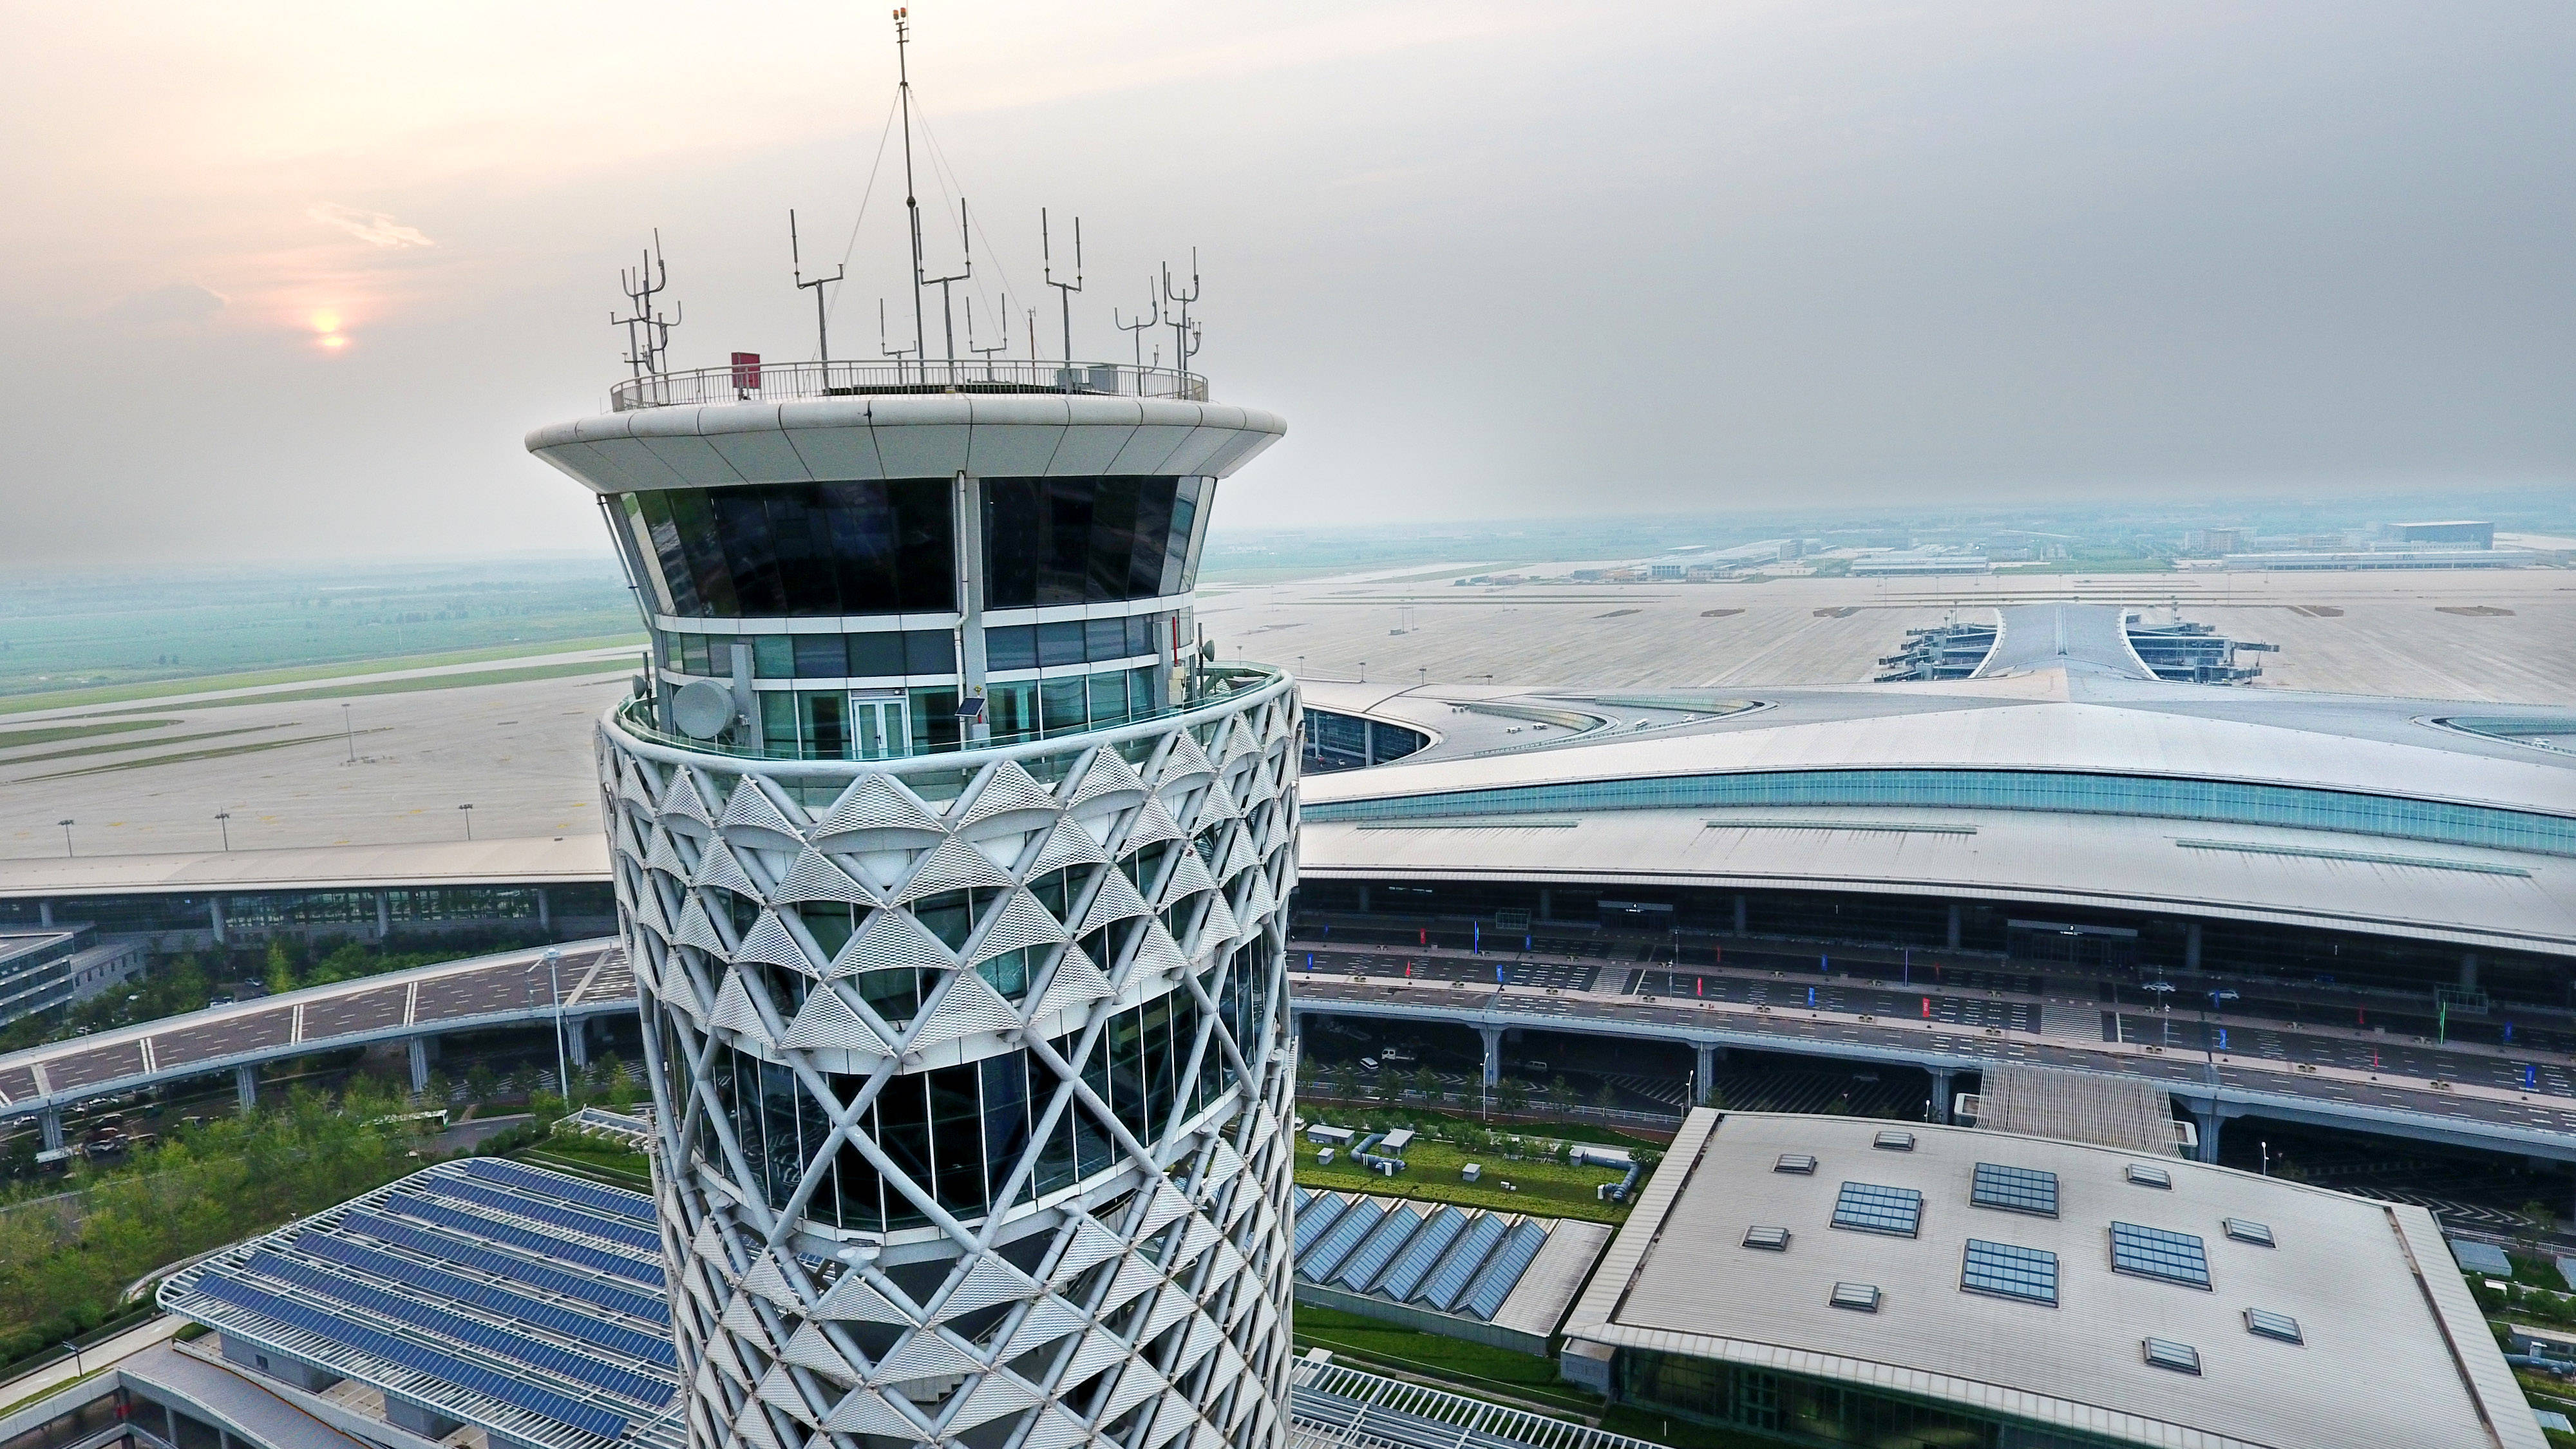 胶东国际机场高清图图片